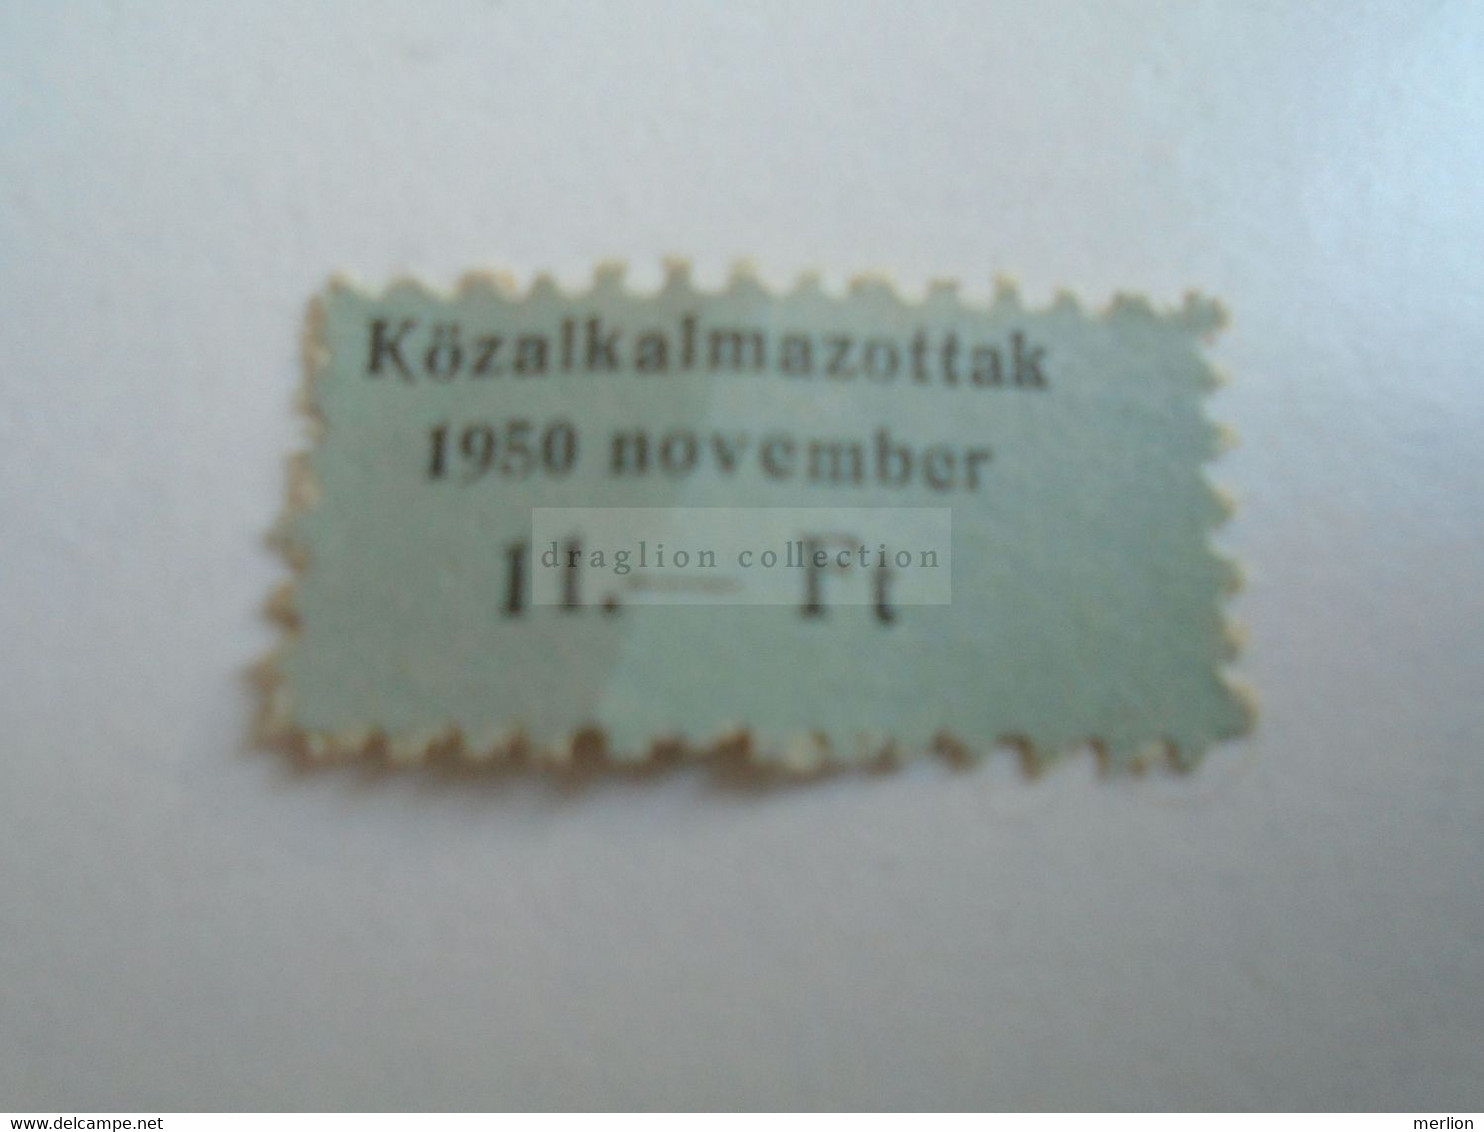 D188110  Hungary Membership Tax Stamp - Civil Servants   Közalkalmazottak    1950 - Fiscales